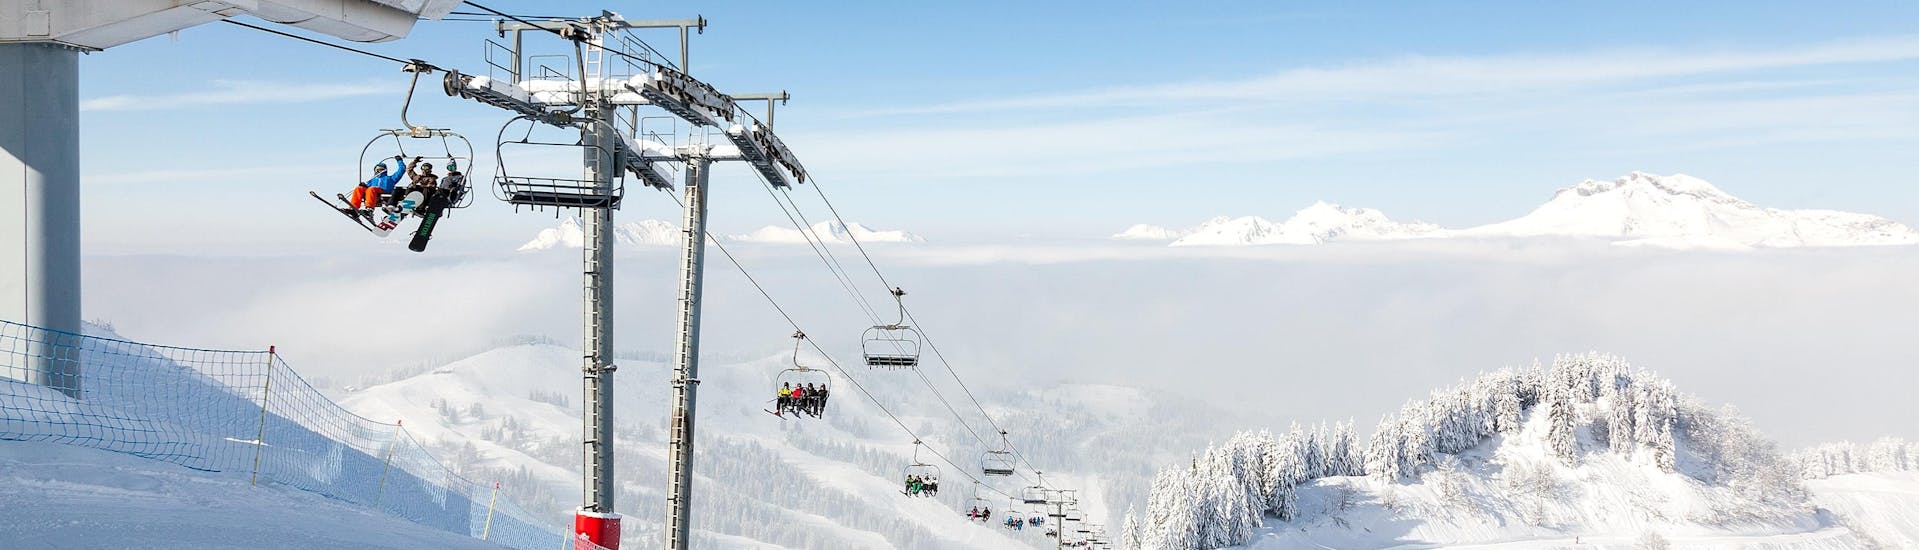 Vue sur un paysage de montagne ensoleillé lors d'un cours de ski avec l'une des écoles de ski de la station de ski Les Gets.